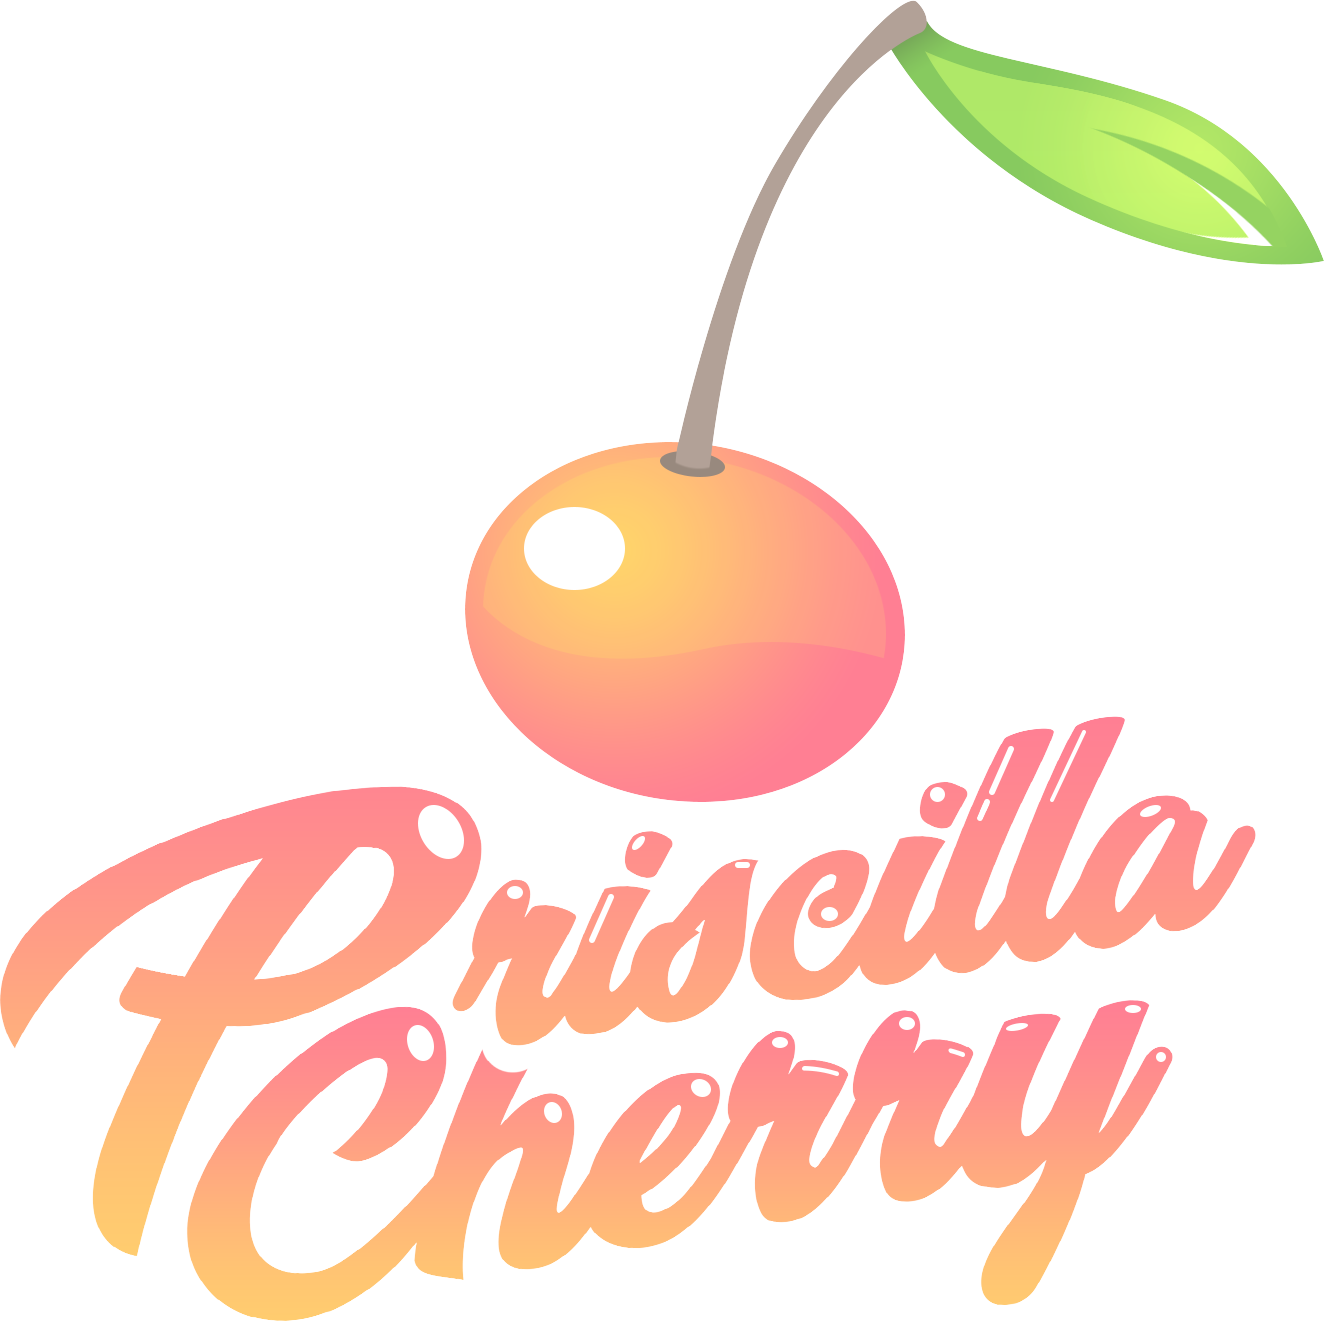 Priscilla Cherry